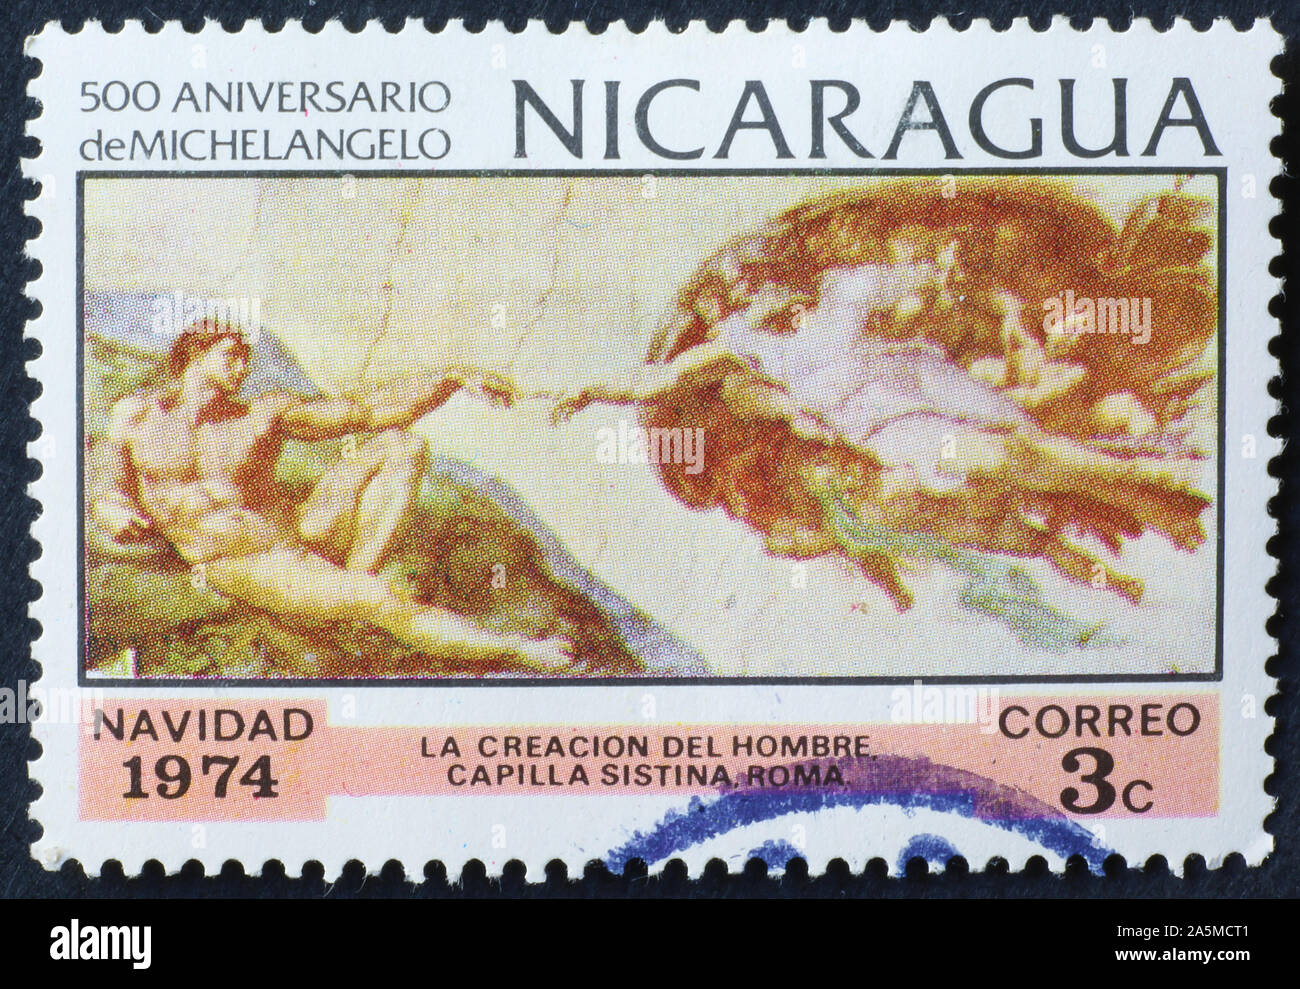 Création de l'homme par Michel-Ange sur timbre-poste du Nicaragua Banque D'Images